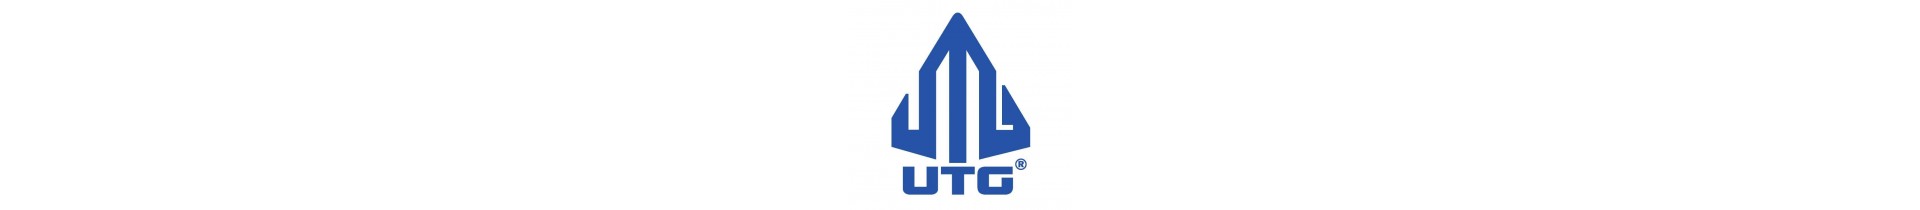 Une sélection d'optique de qualité, Utg est une marque avec le meilleur rapport qualité prix du marché de l'optique sur votre boutique www.tactirshop.fr